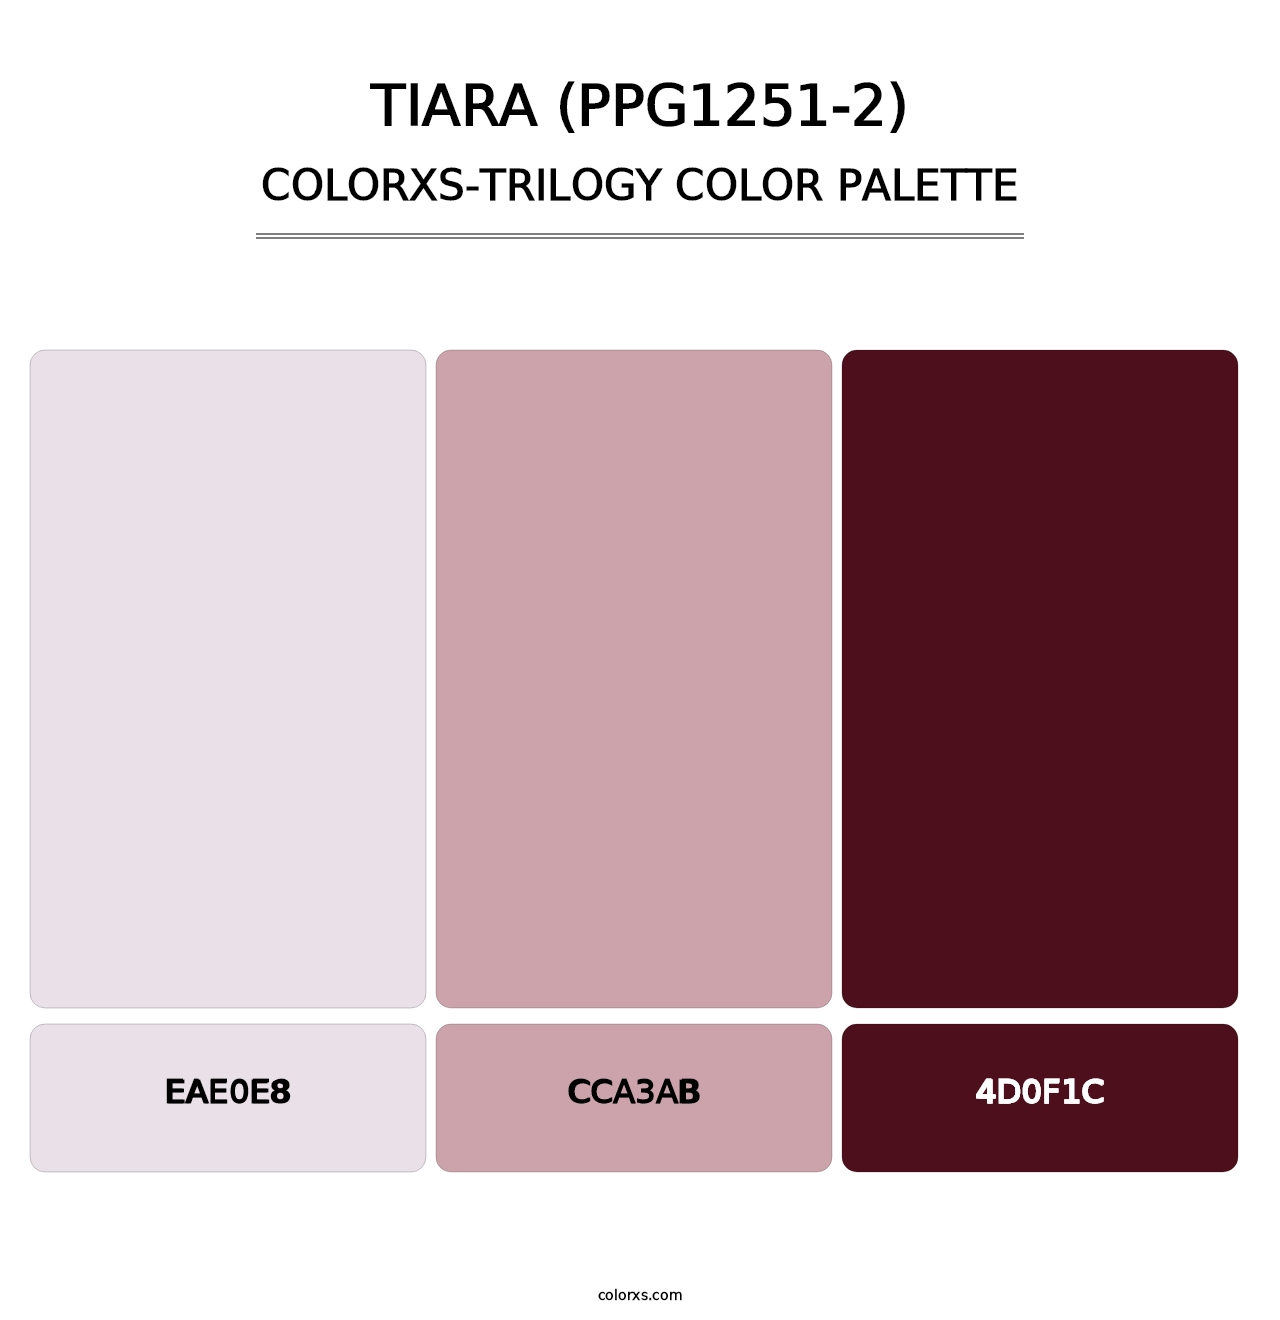 Tiara (PPG1251-2) - Colorxs Trilogy Palette